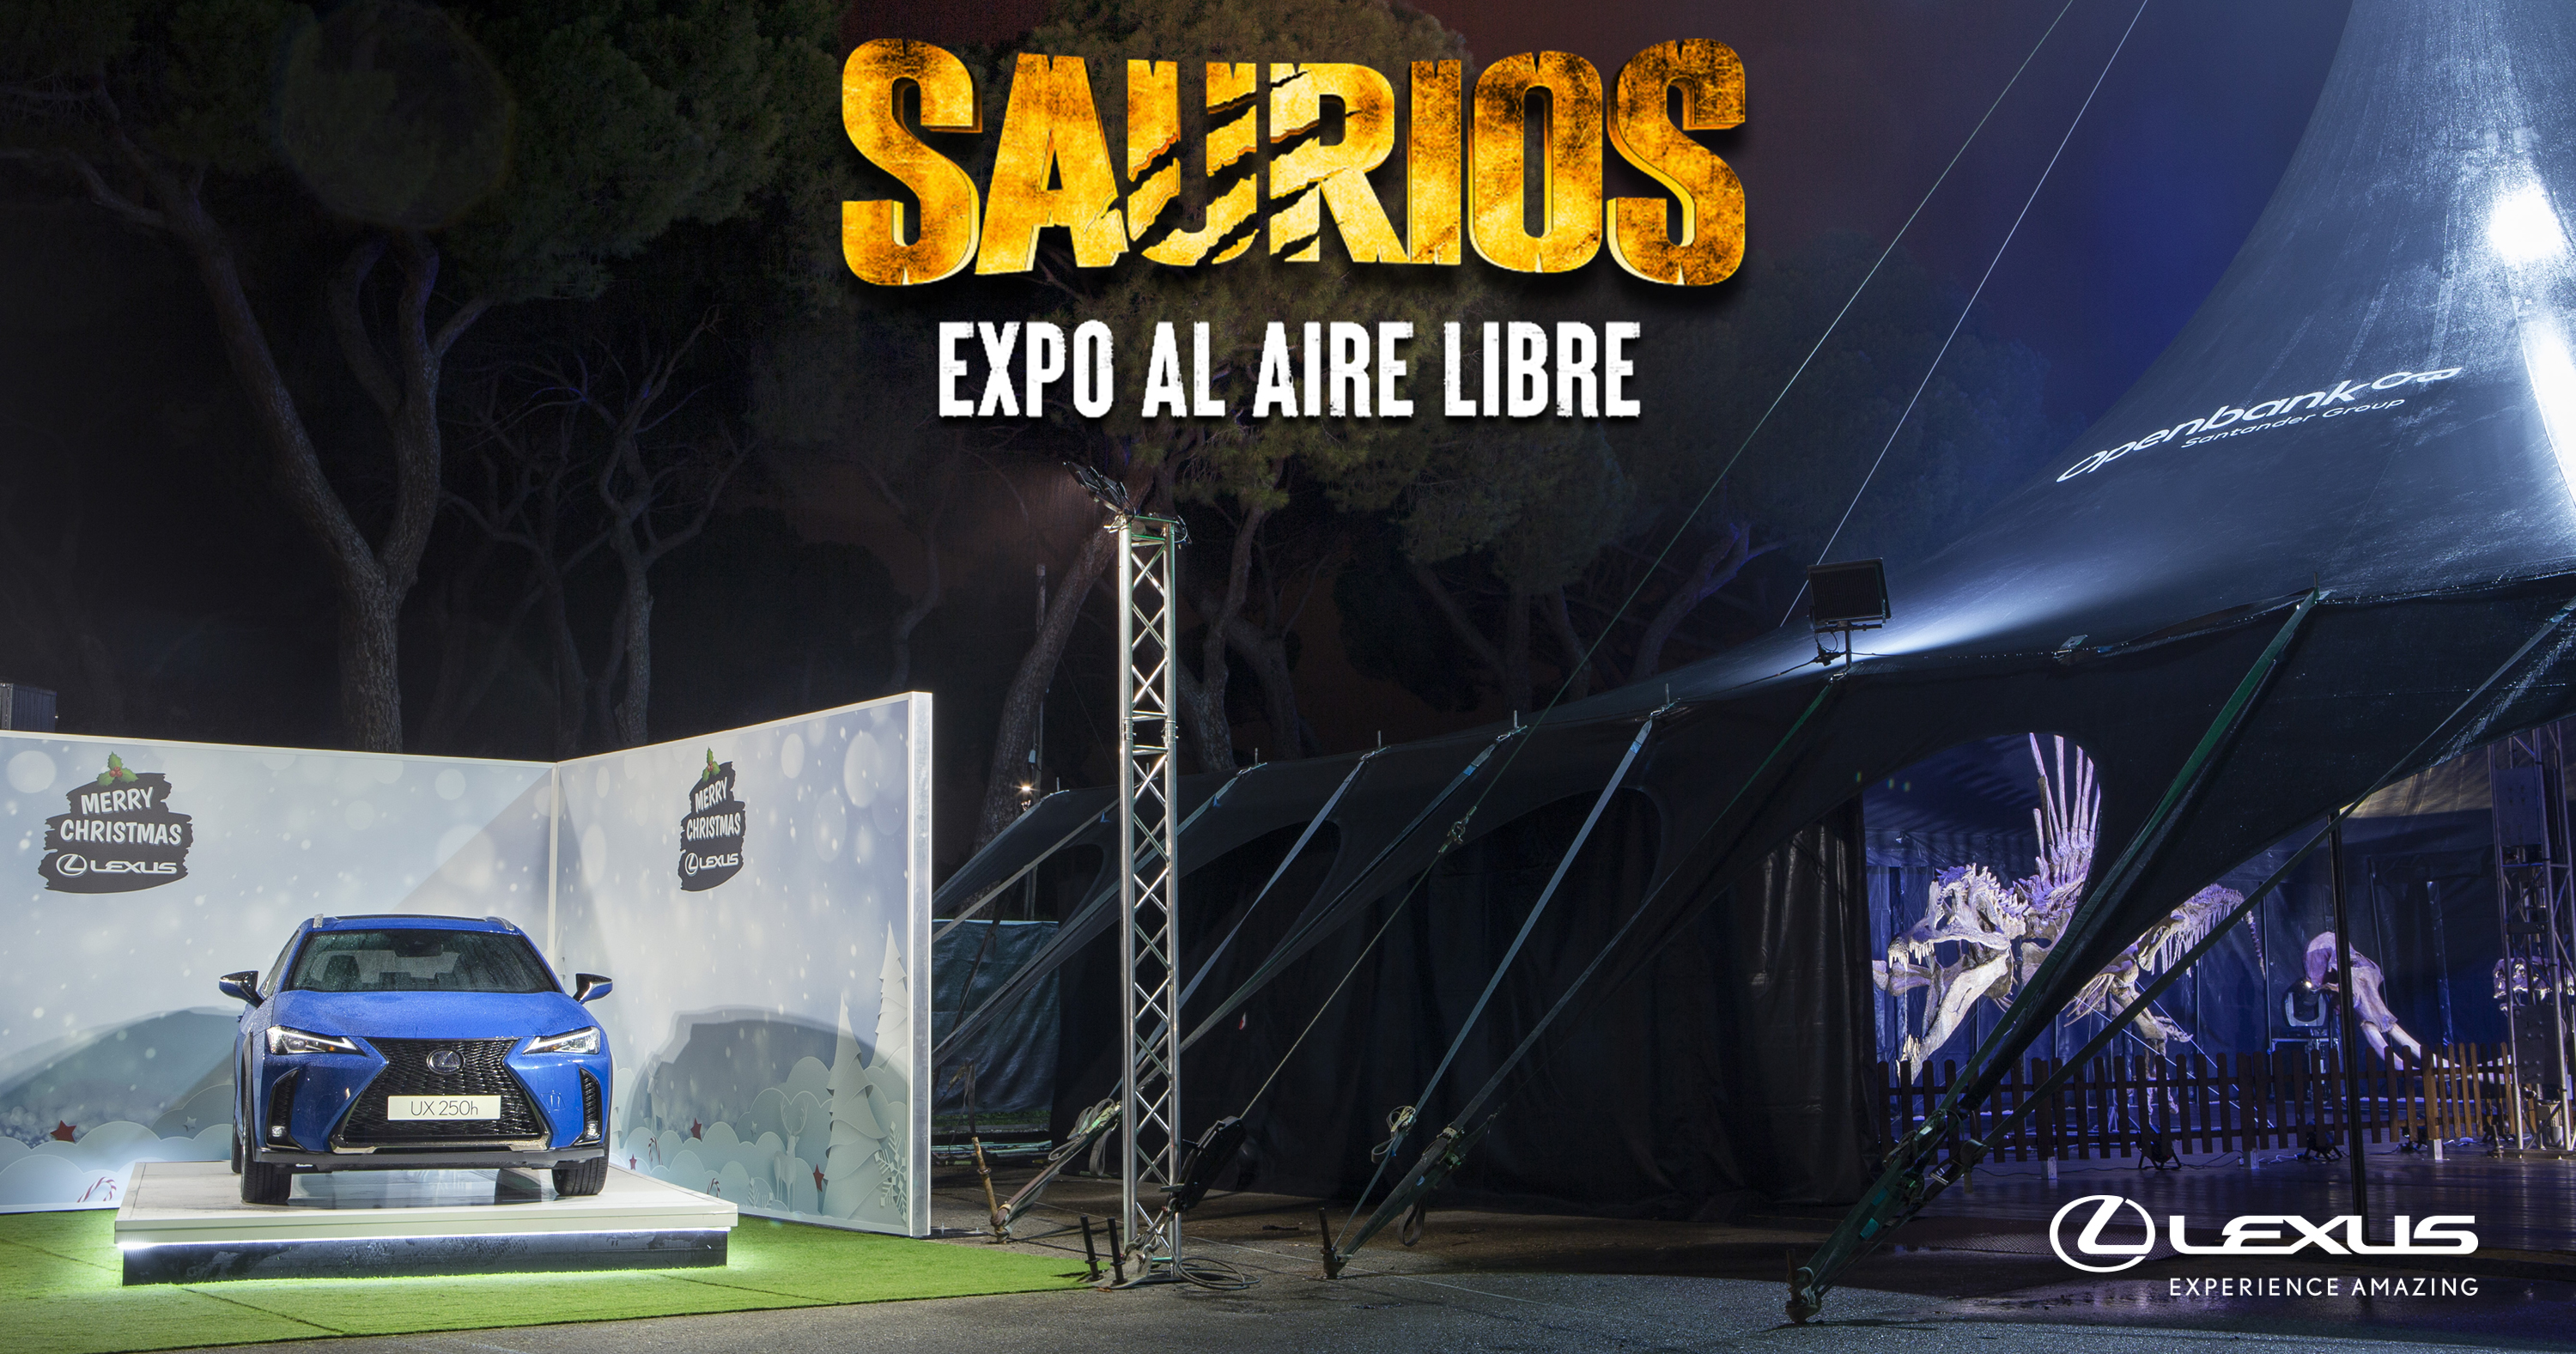 Galería: Lexus coche oficial de la exposición al aire libre Saurios en Madrid